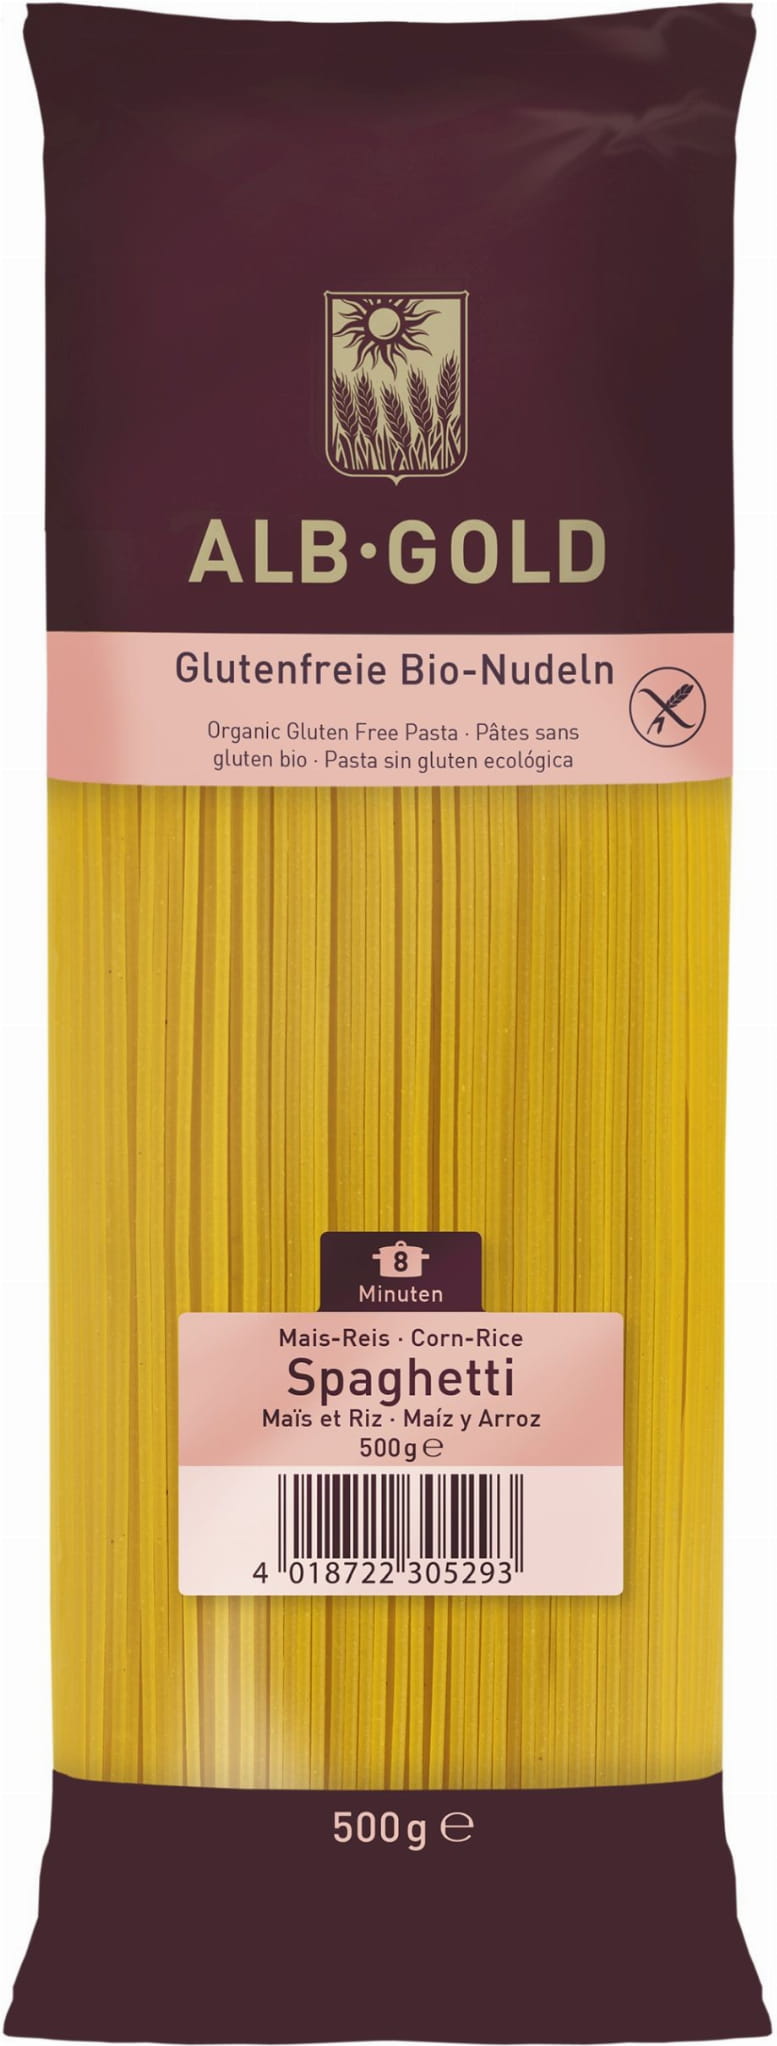 Nudeln (Mais - Reis) glutenfreie Spaghetti BIO 500 g - ALB GOLD